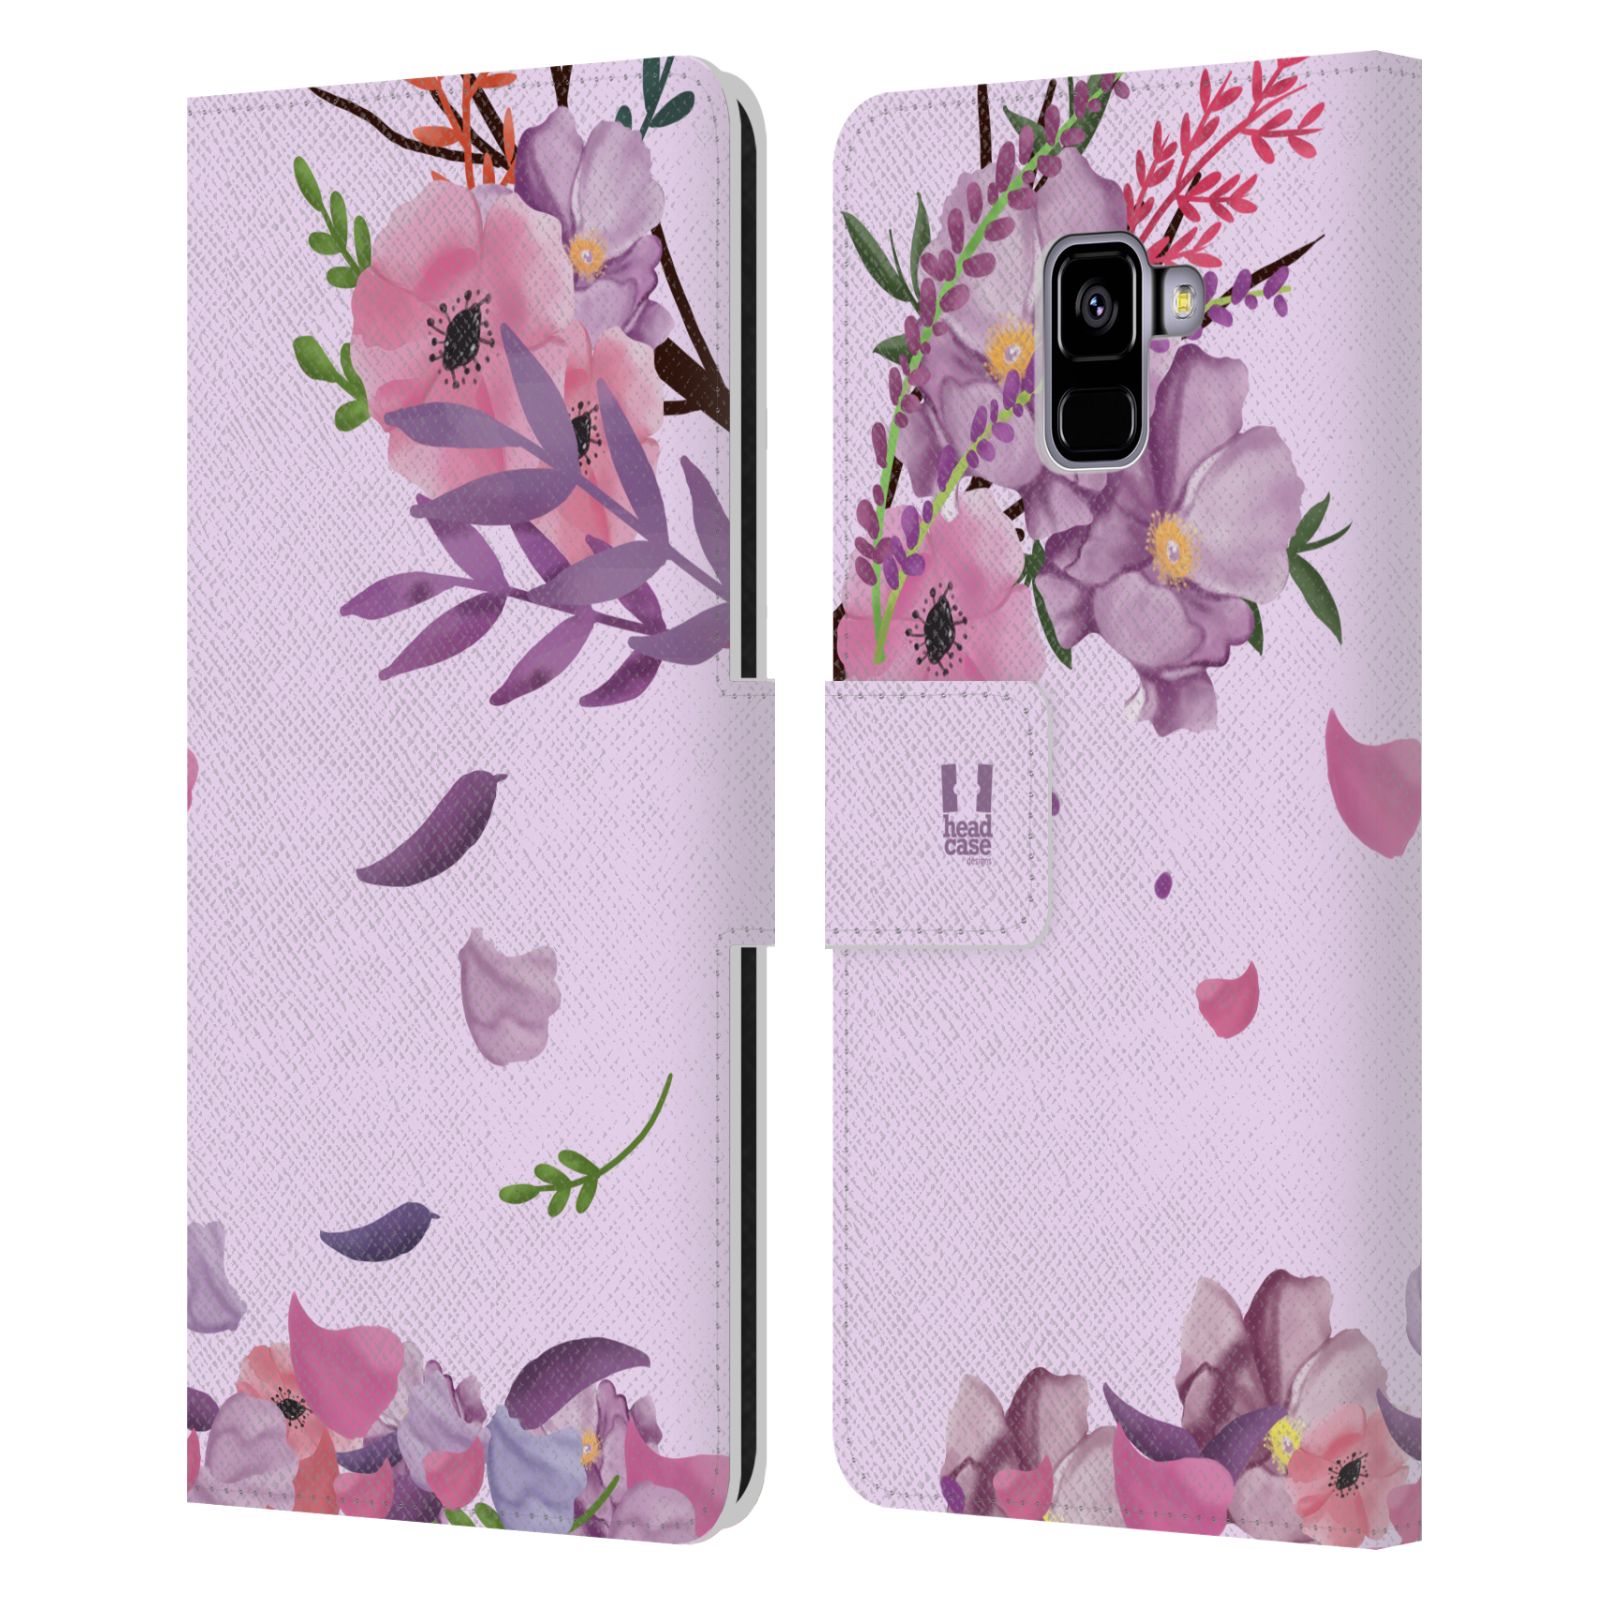 Pouzdro na mobil Samsung Galaxy A8+ 2018 - HEAD CASE - Rozkvetlé růže a listy růžová